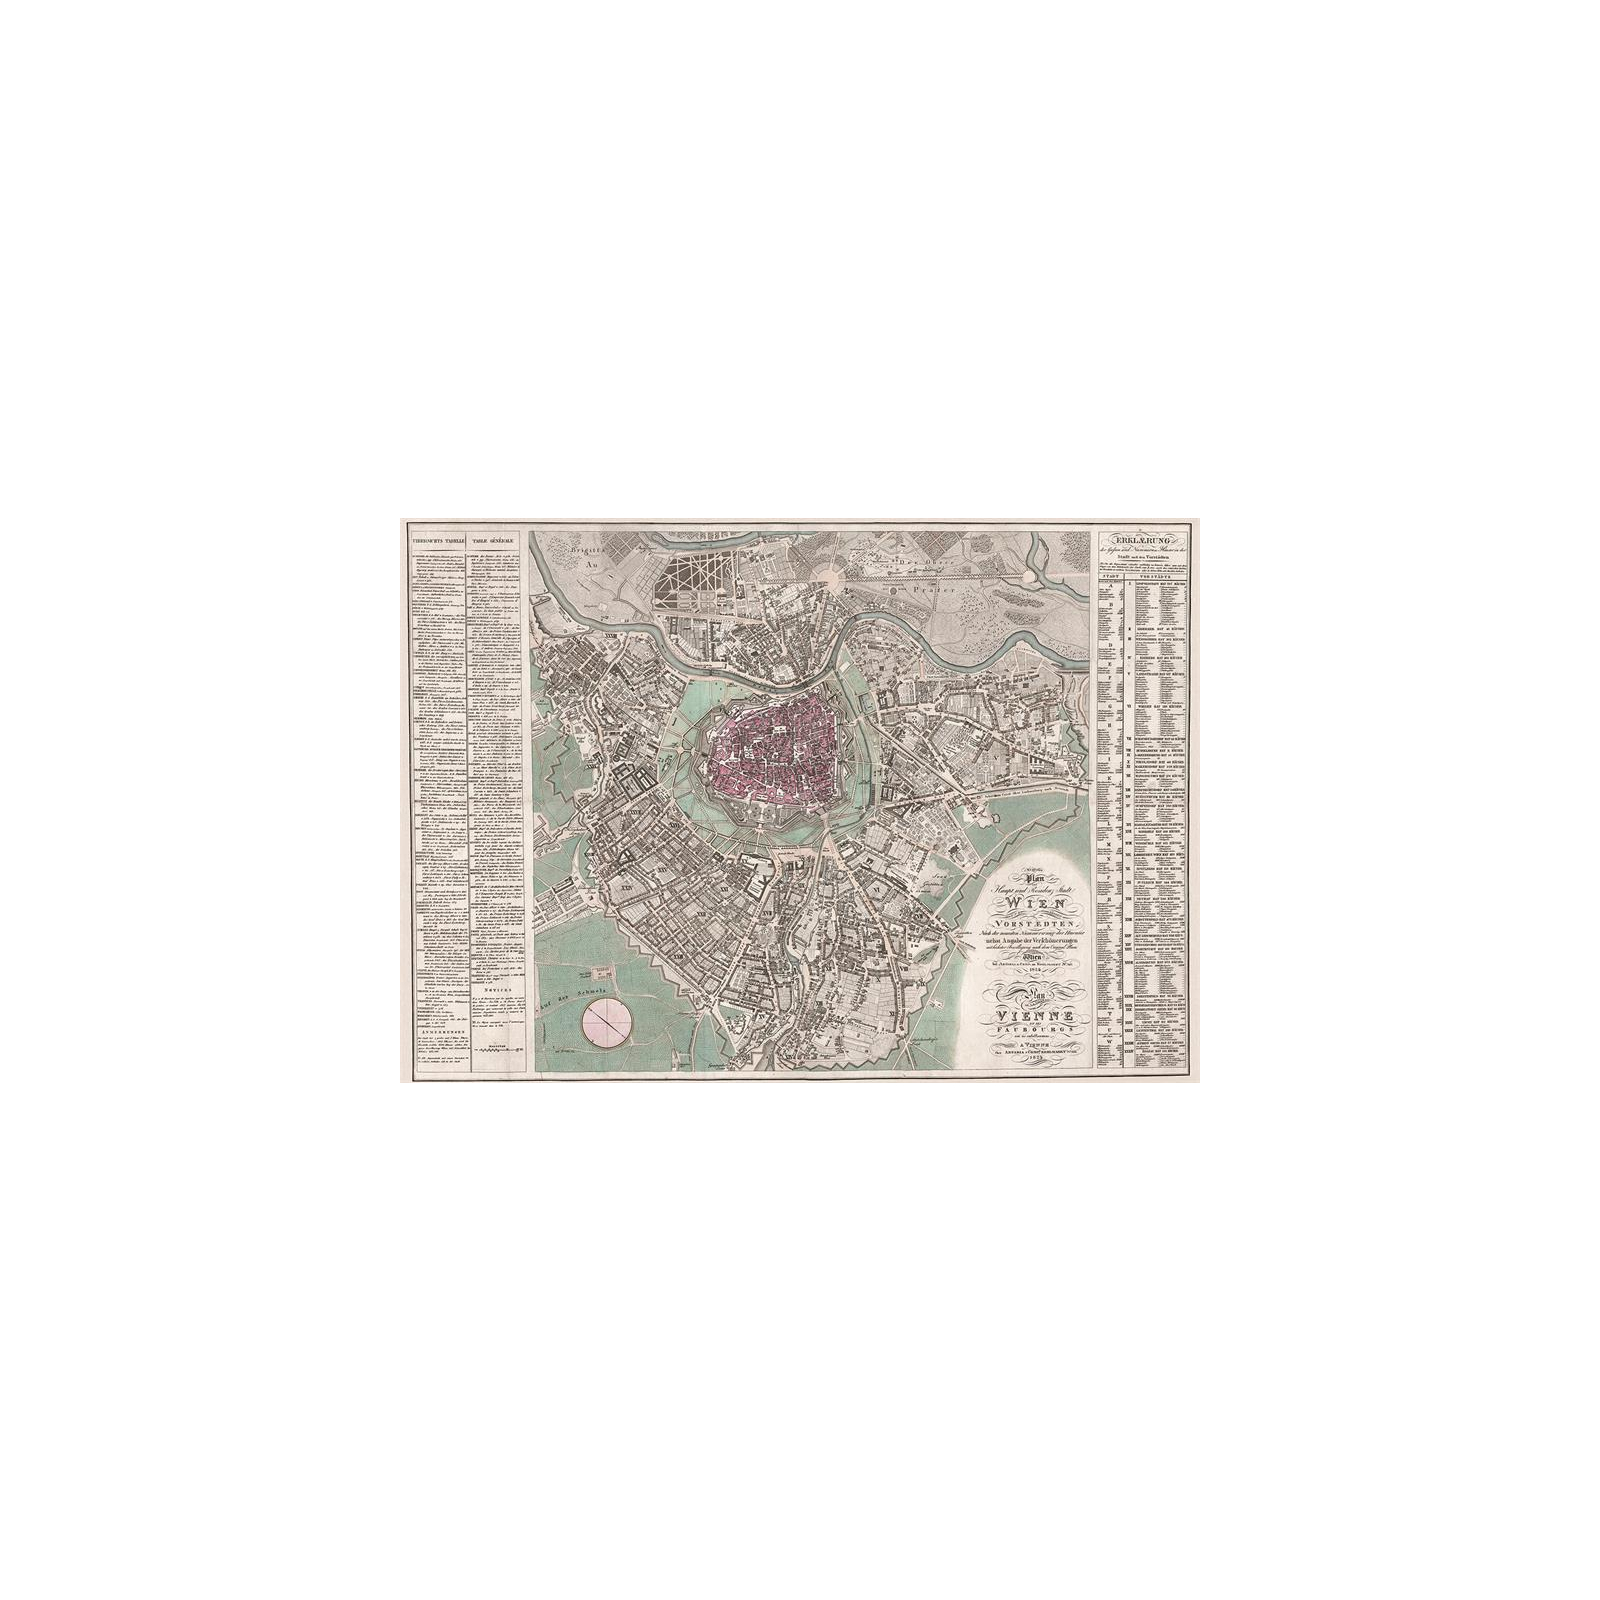 Пазл Piatnik Карта Вены 1824, 1000 элементов (PT-559440) изображение 2